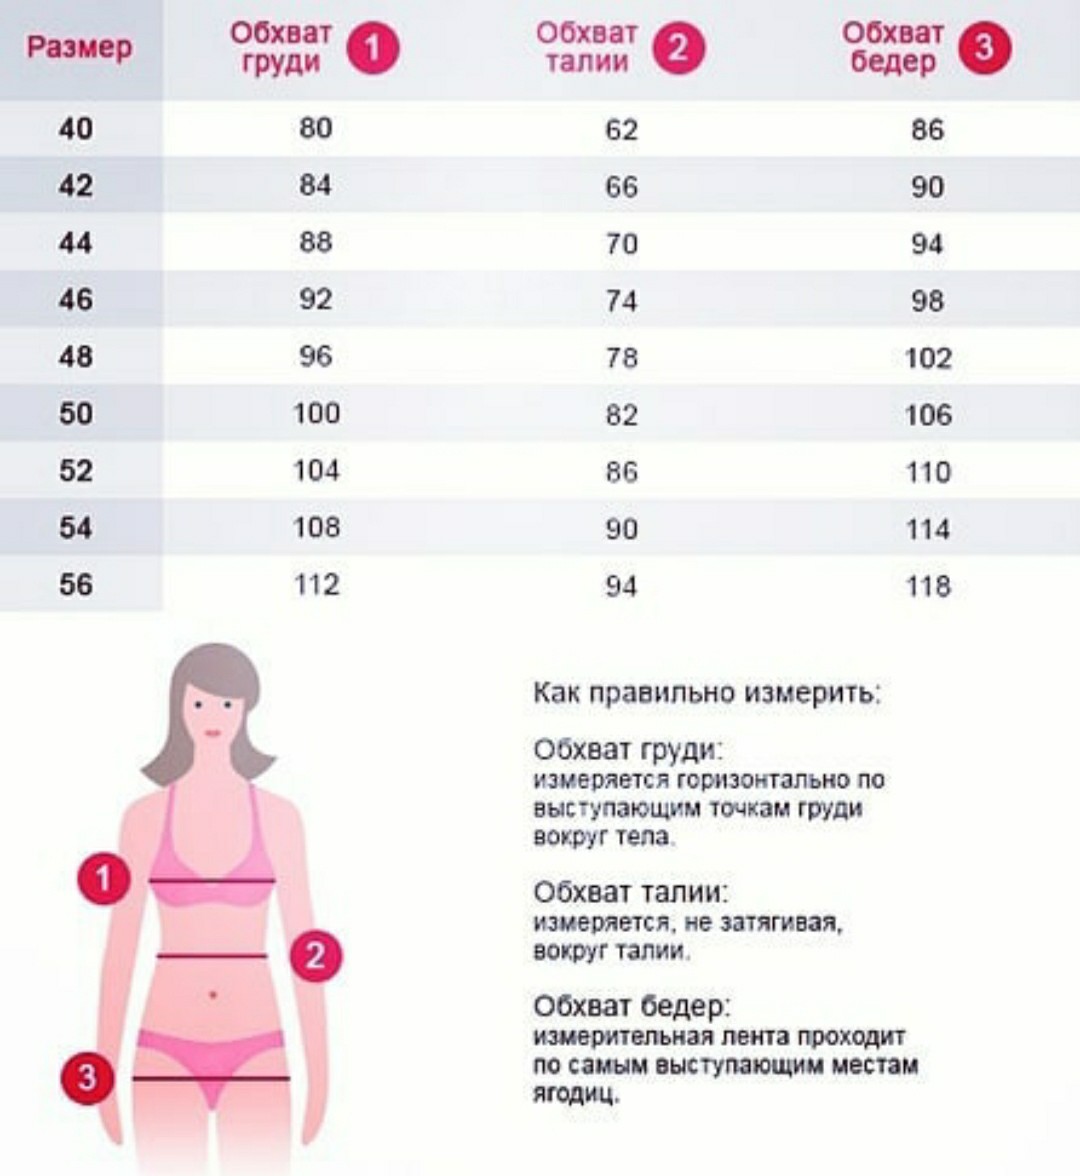 как правильно измерить объем груди у женщин фото 96